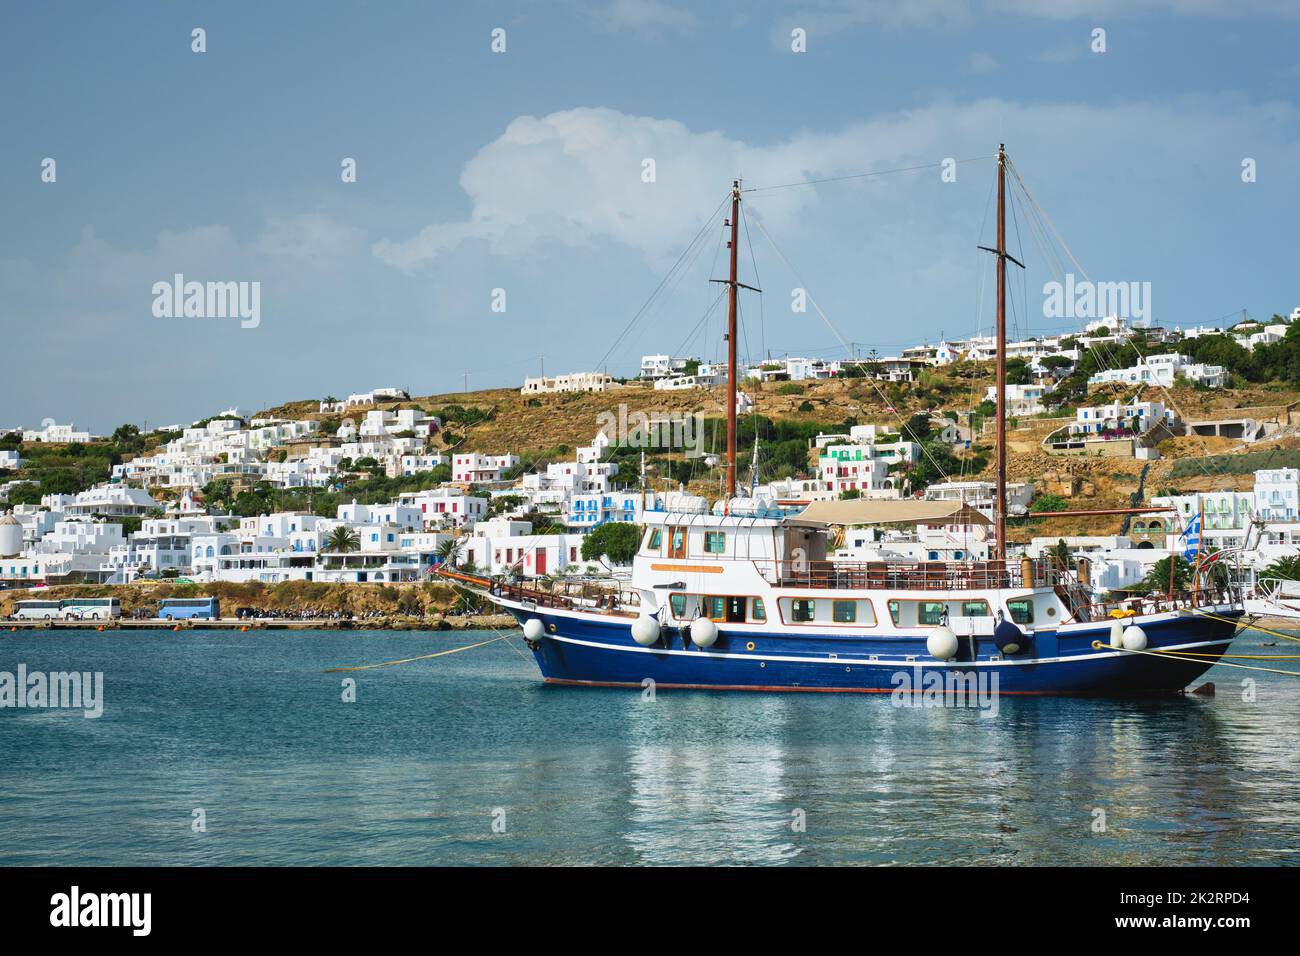 Vessel schooner moored in port harbor of Mykonos island, Greece Stock Photo